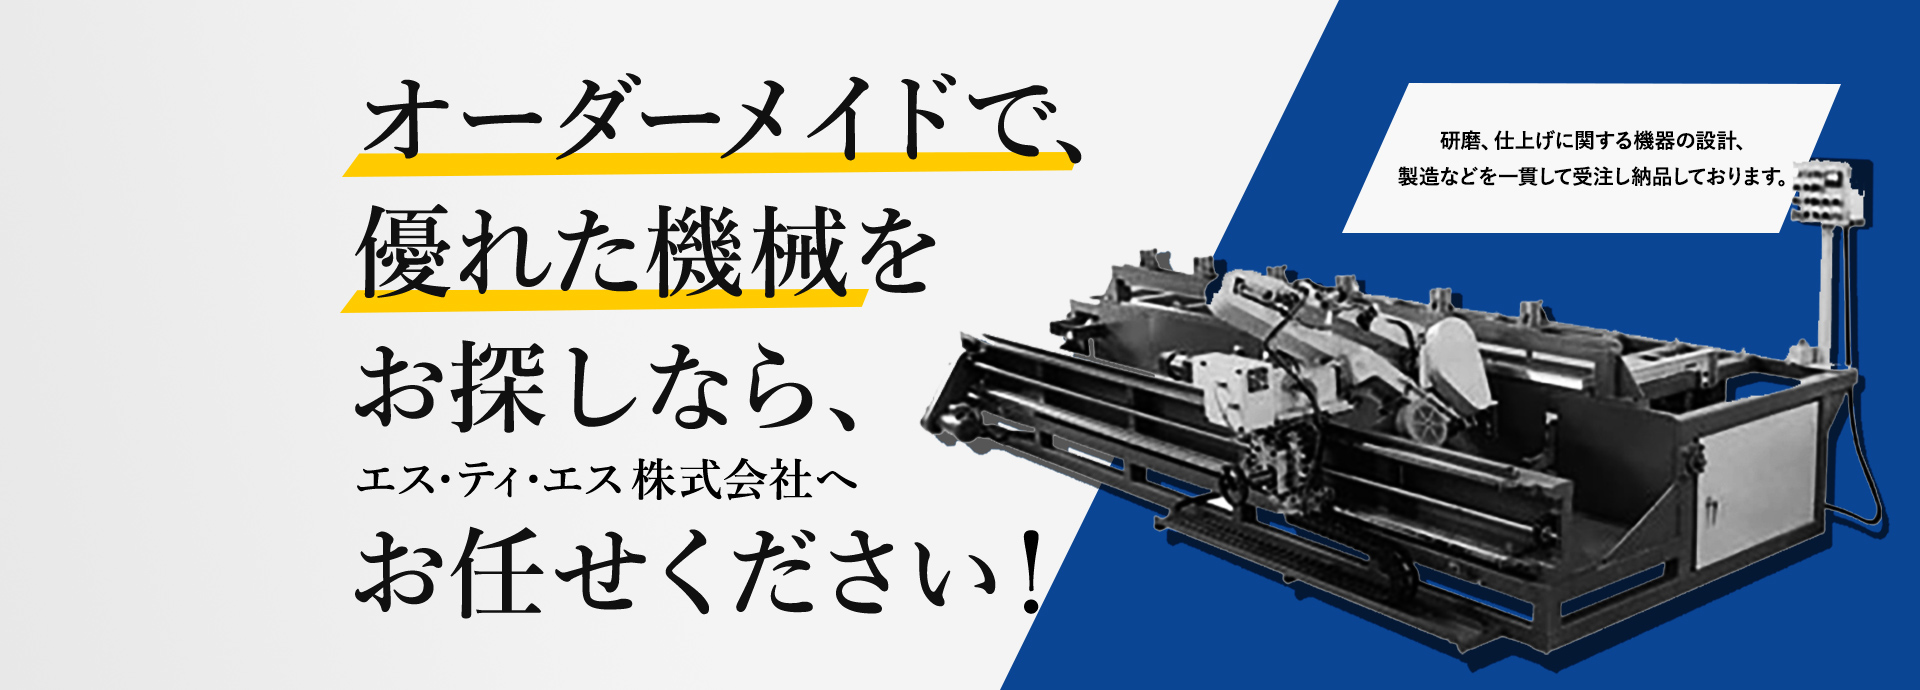 エス・ティ・エス株式会社 | 研磨機・仕上げ機のオーダーメード | 愛知県豊田市の研磨機製造